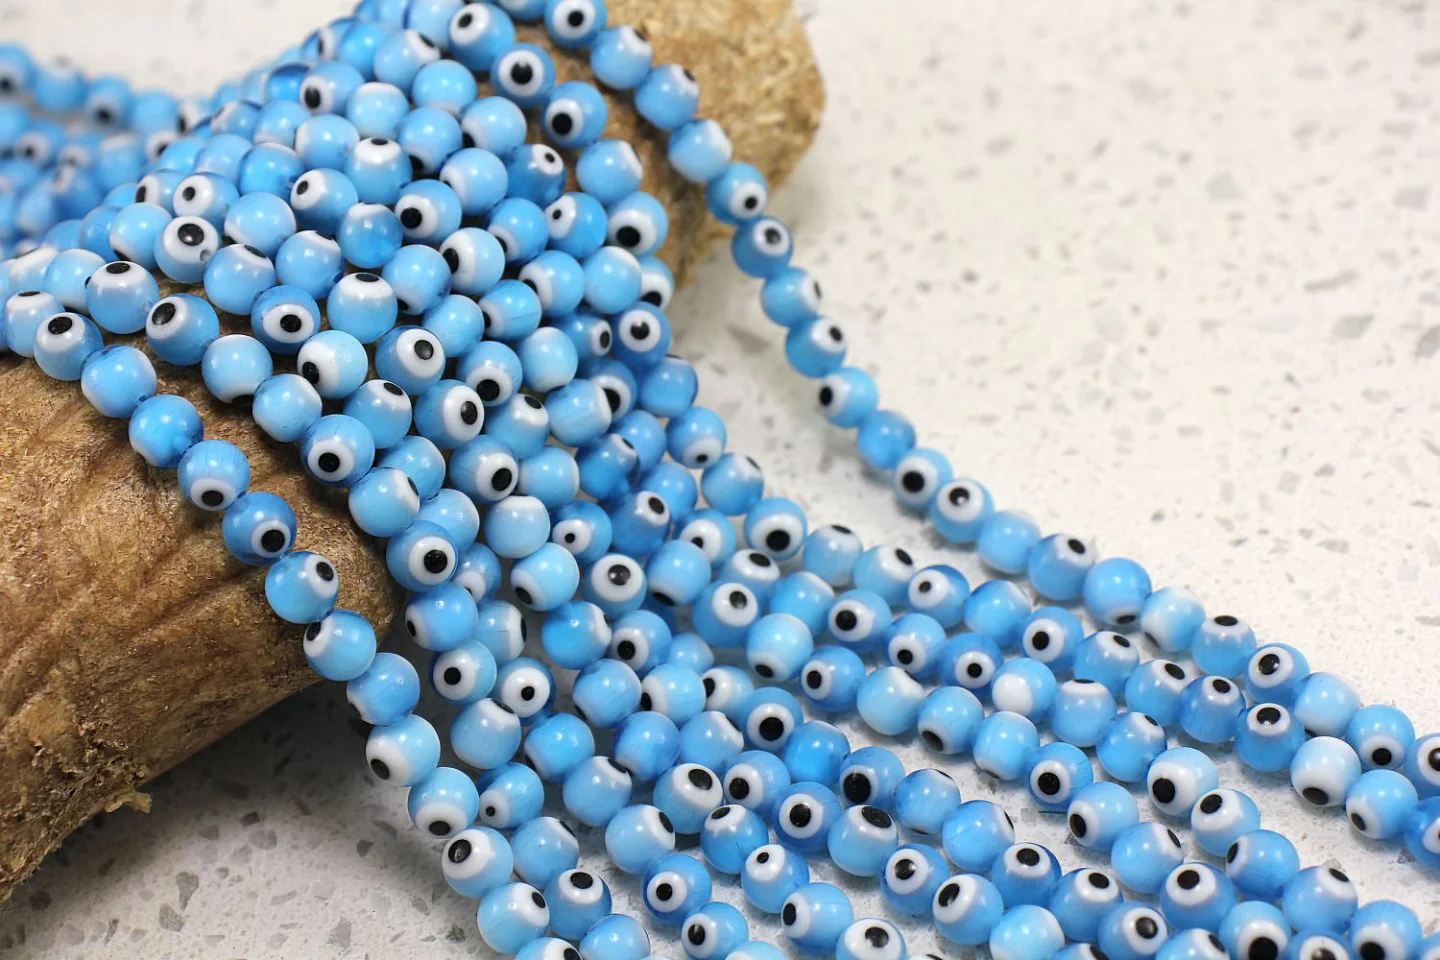 6mm-blue-glass-evil-eye-beads.